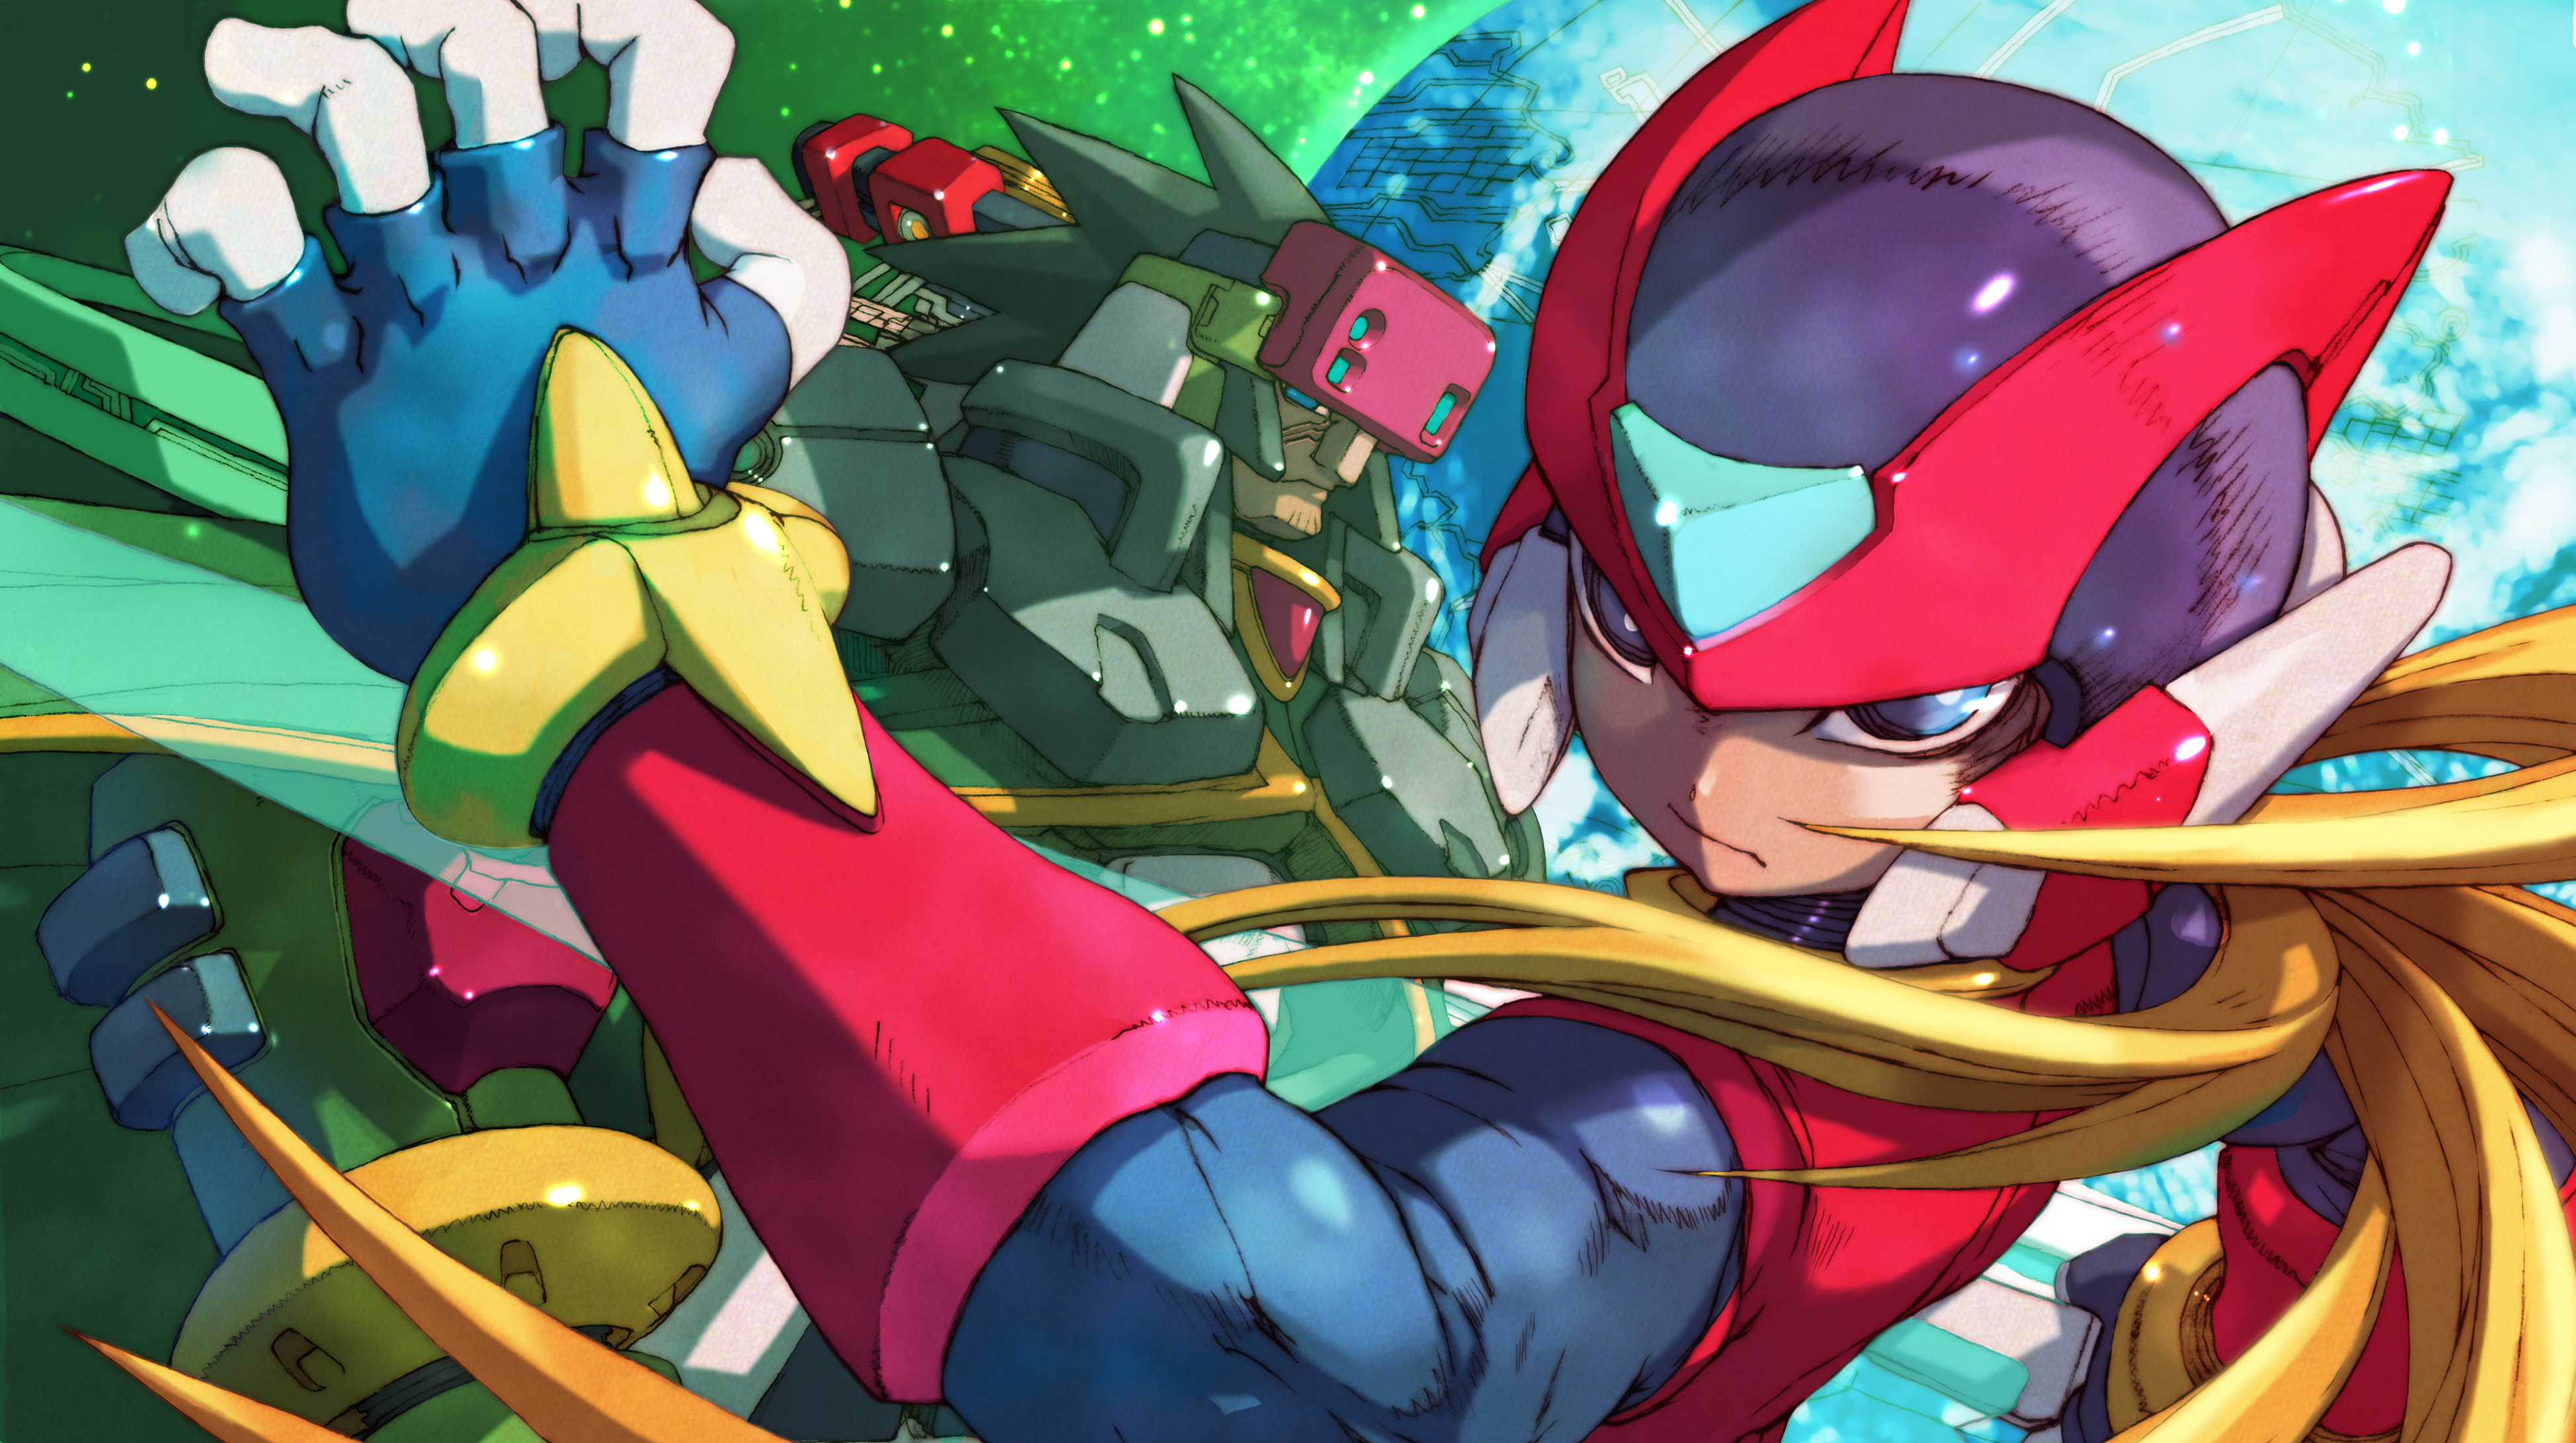 Mega Man Zero 4 Backgrounds, Compatible - PC, Mobile, Gadgets| 3899x2184 px